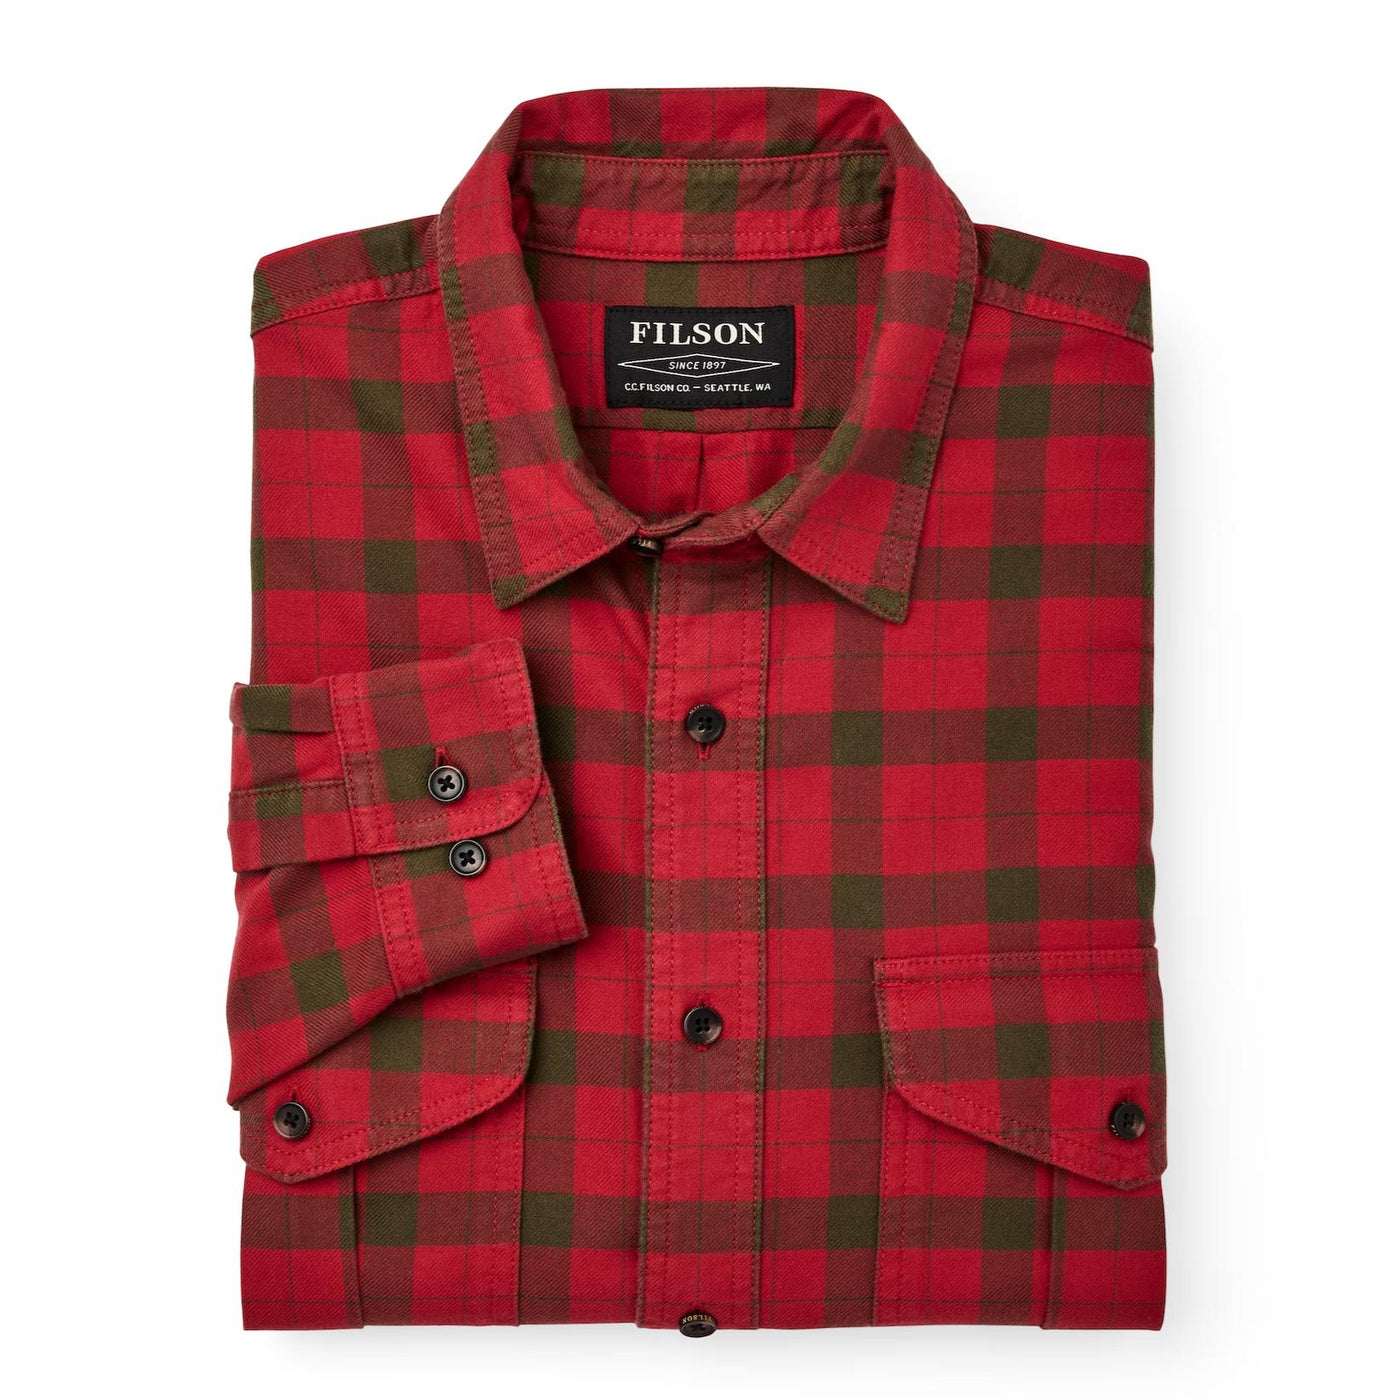 Filson Men's Lightweight Alaskan Guide Shirt-Men's Clothing-RedSurGrn-M-Kevin's Fine Outdoor Gear & Apparel